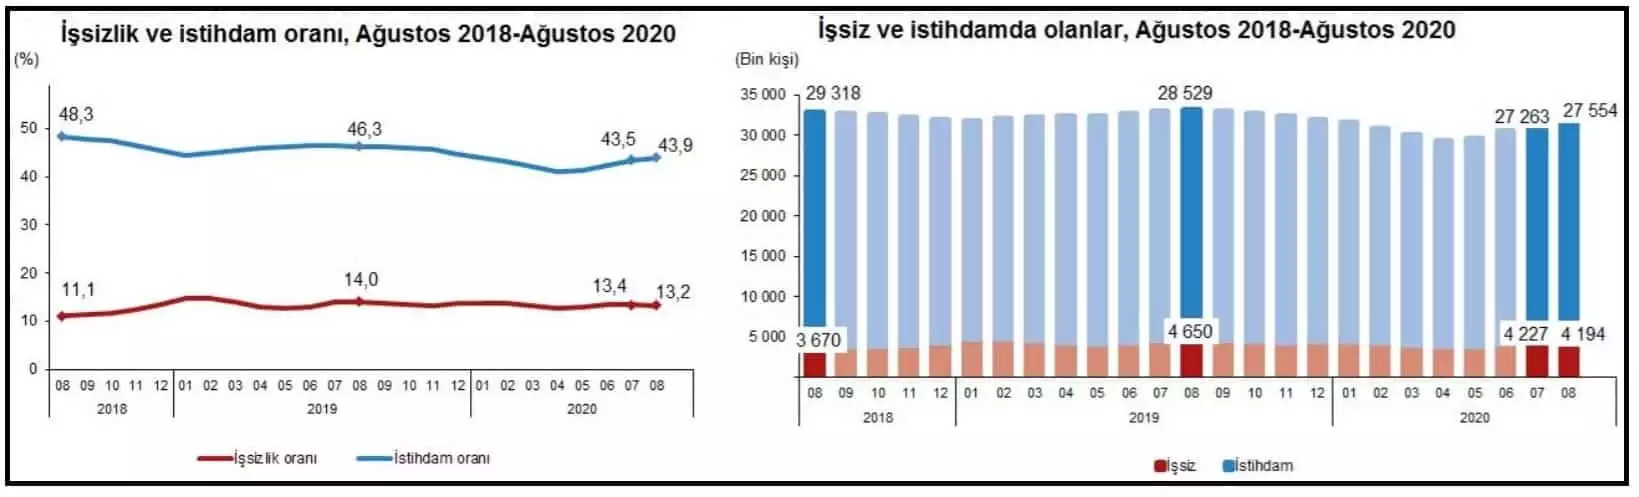 Türkiye i̇statistik kurumu'nun (tüi̇k) verilerine göre işsizlik yüzde 13. 2'ye, istihdam yüzde 43. 9'a geriledi